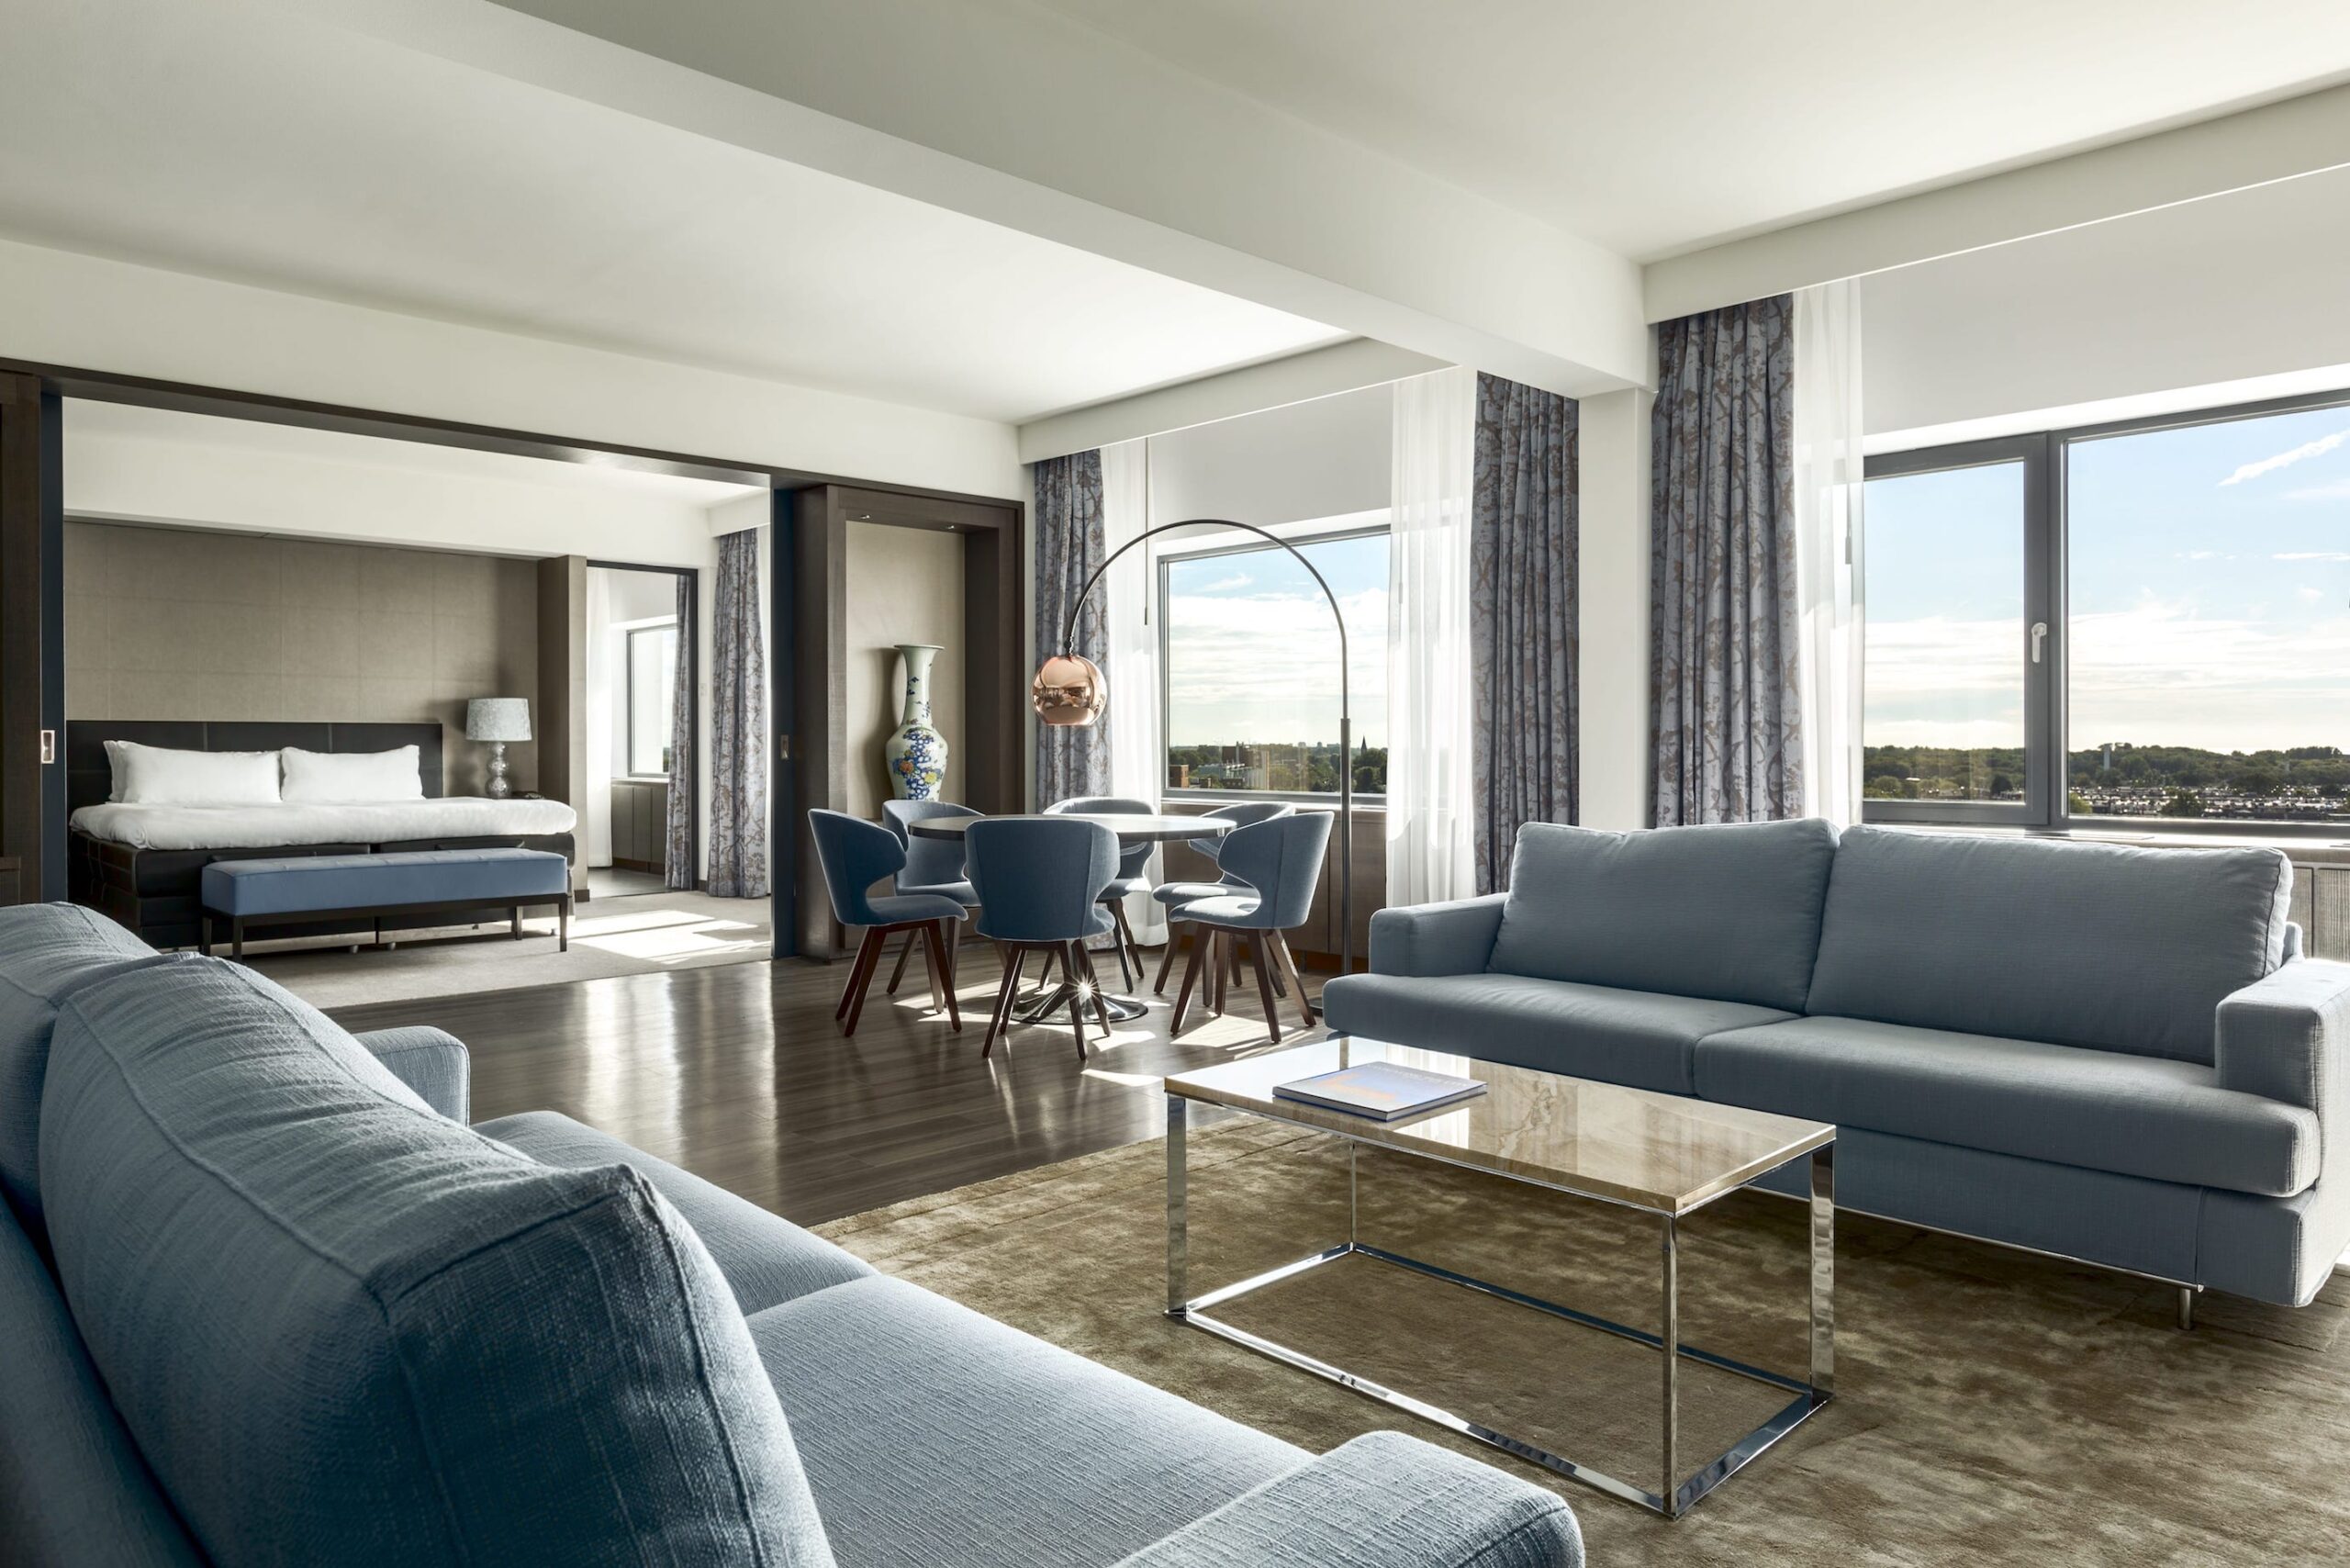 zona de estar de la habitación de hotel con sofás tapizados en tono gris, sillas y cortinas en tonos combinados